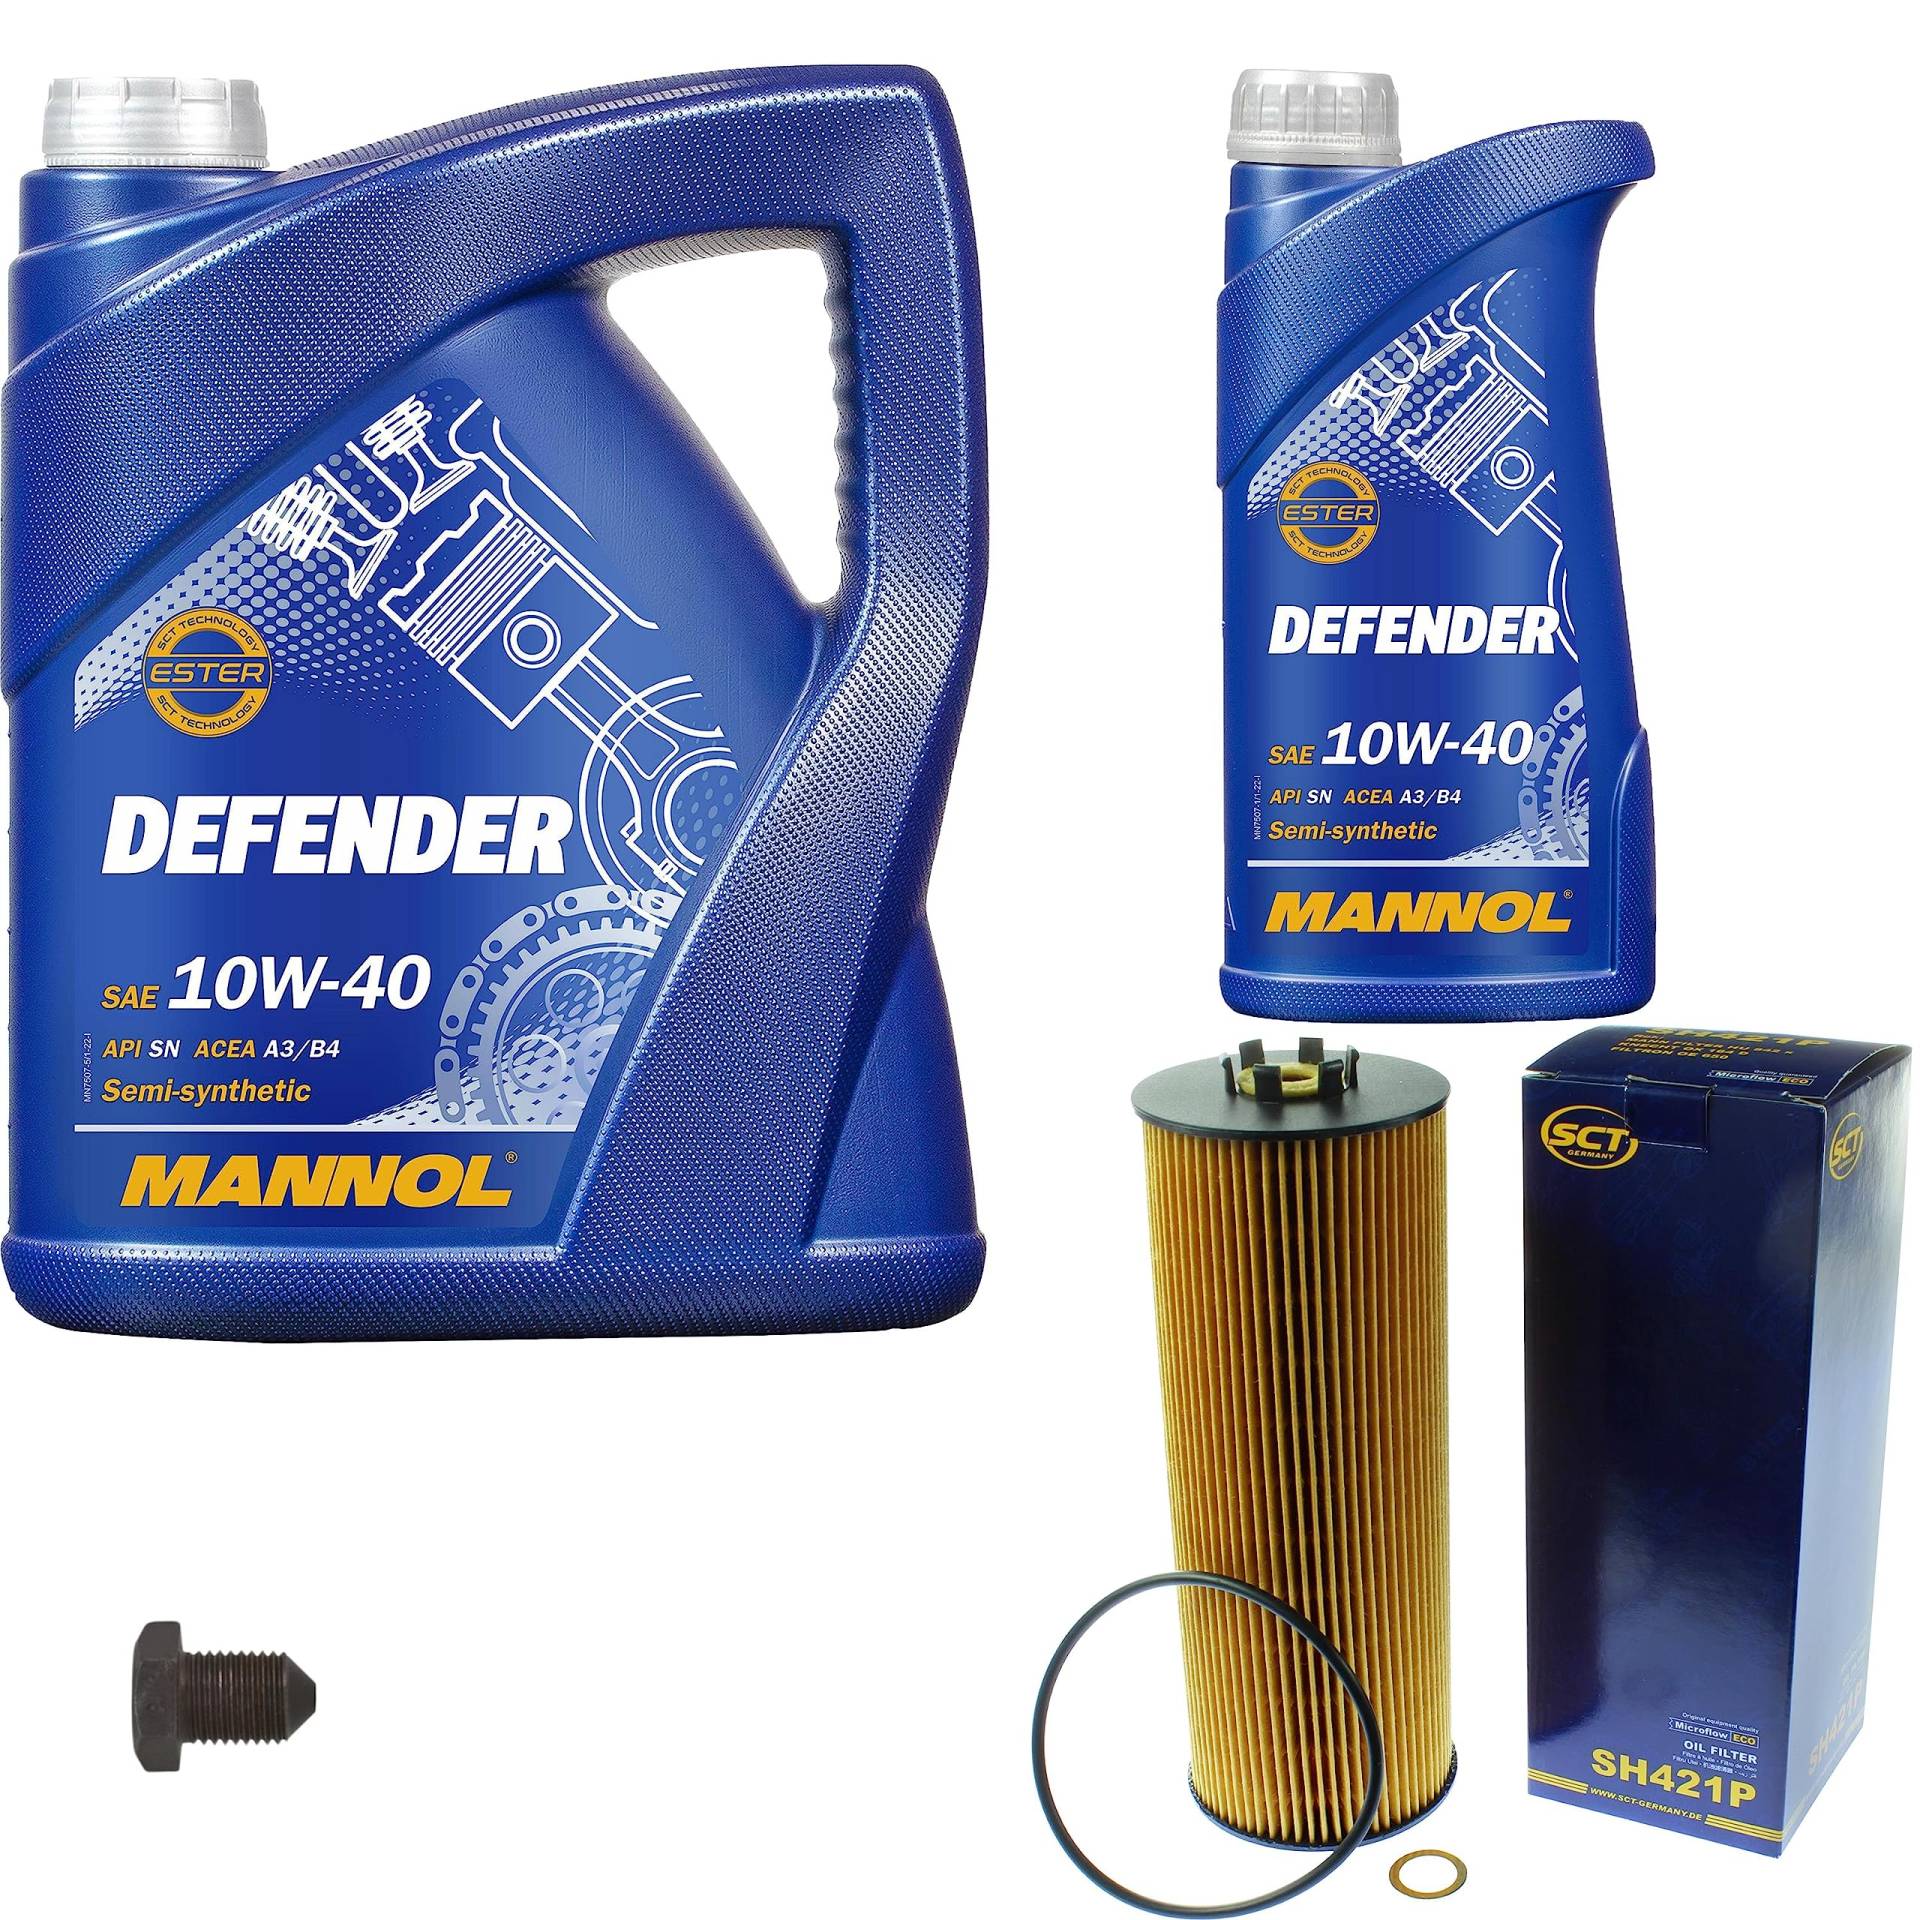 Inspektionspaket Wartungspaket Filterset mit 6 L Motoröl Defender 10W-40, Ölfilter, Verschlussschraube von EISENFELS